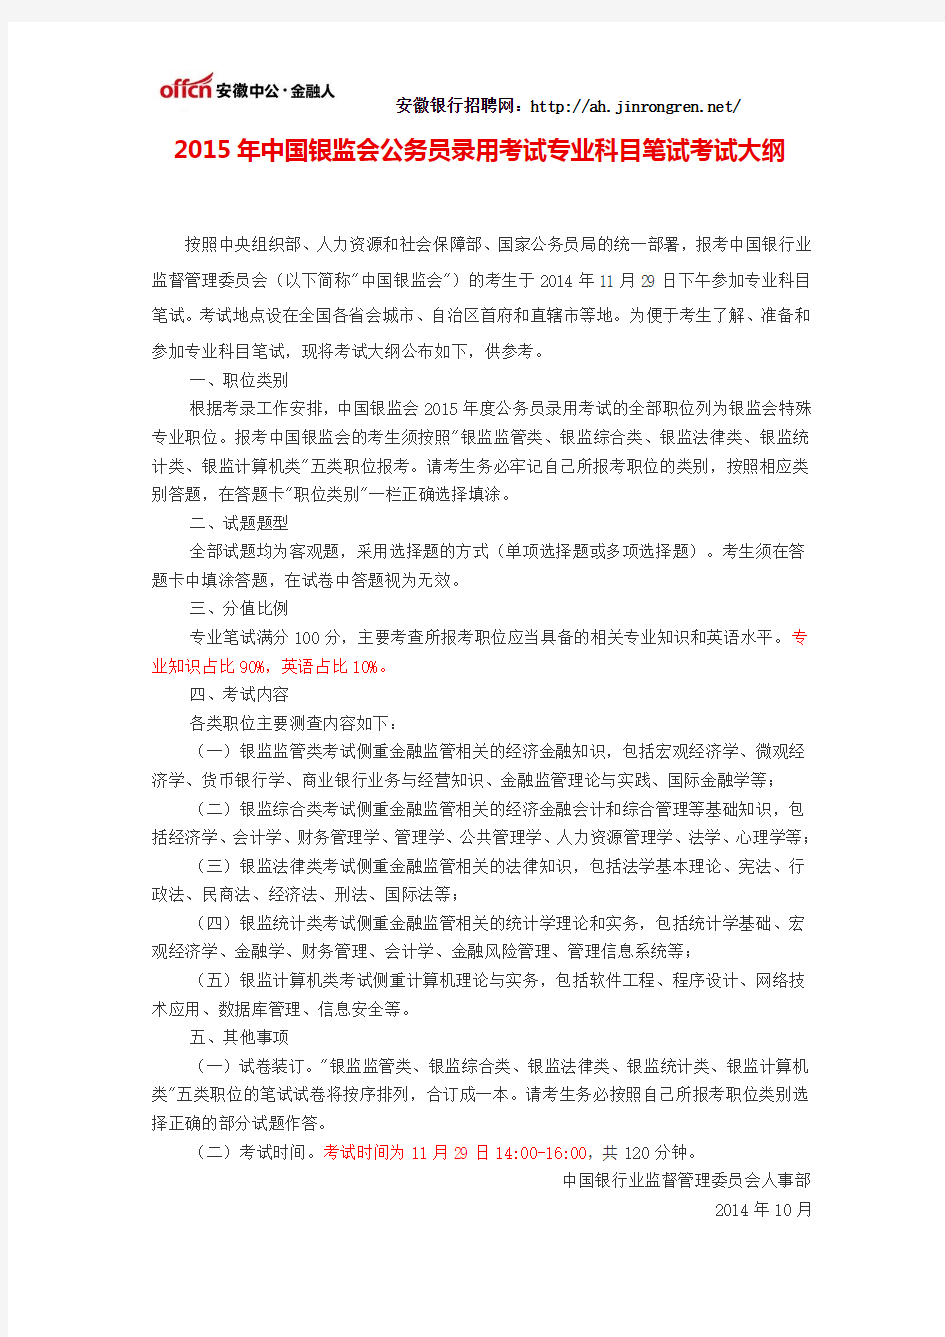 2015年中国银监会公务员录用考试专业科目笔试考试大纲